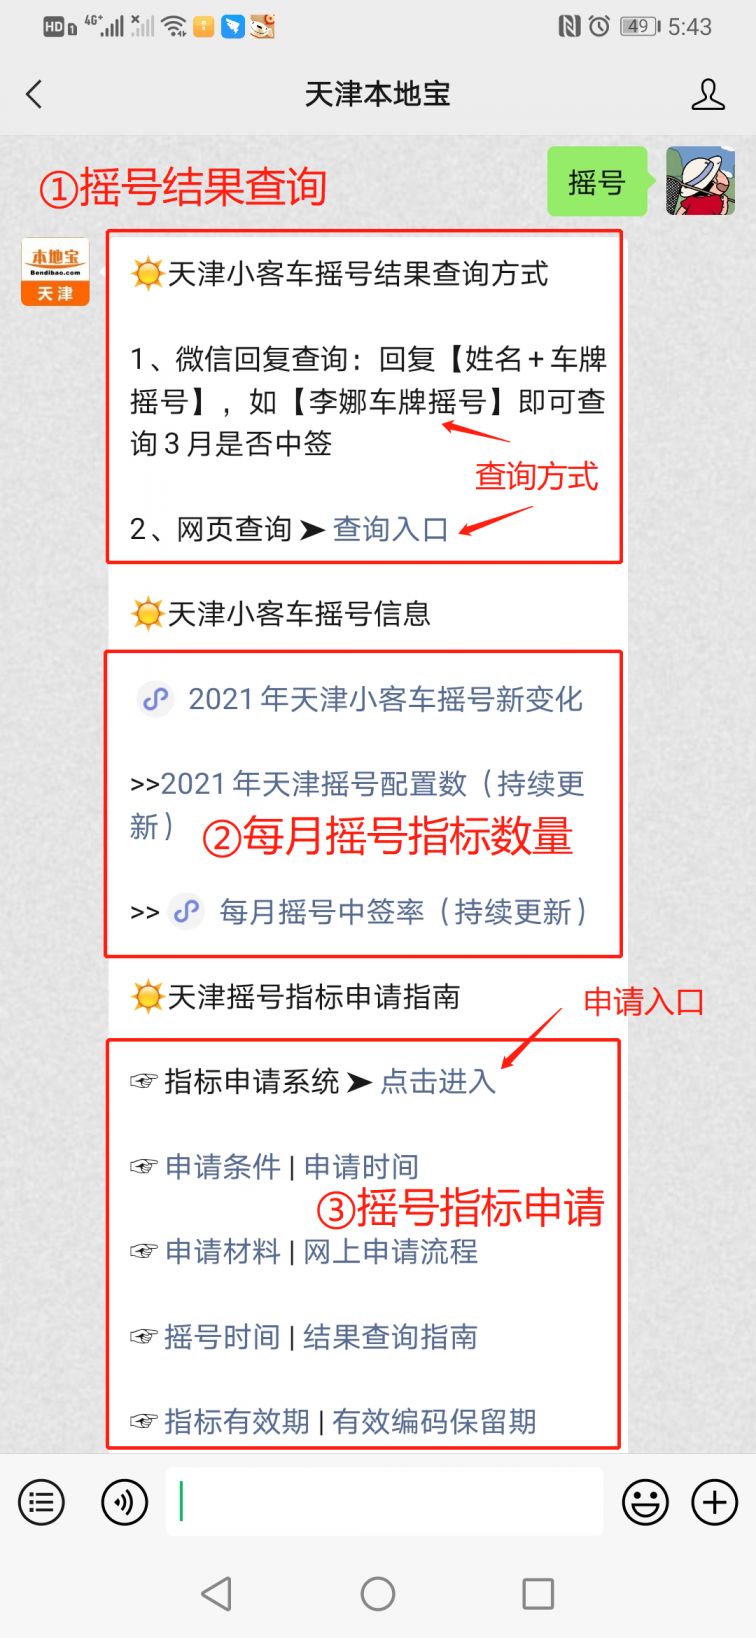 2021天津小客车摇号结果查询(每月更新)